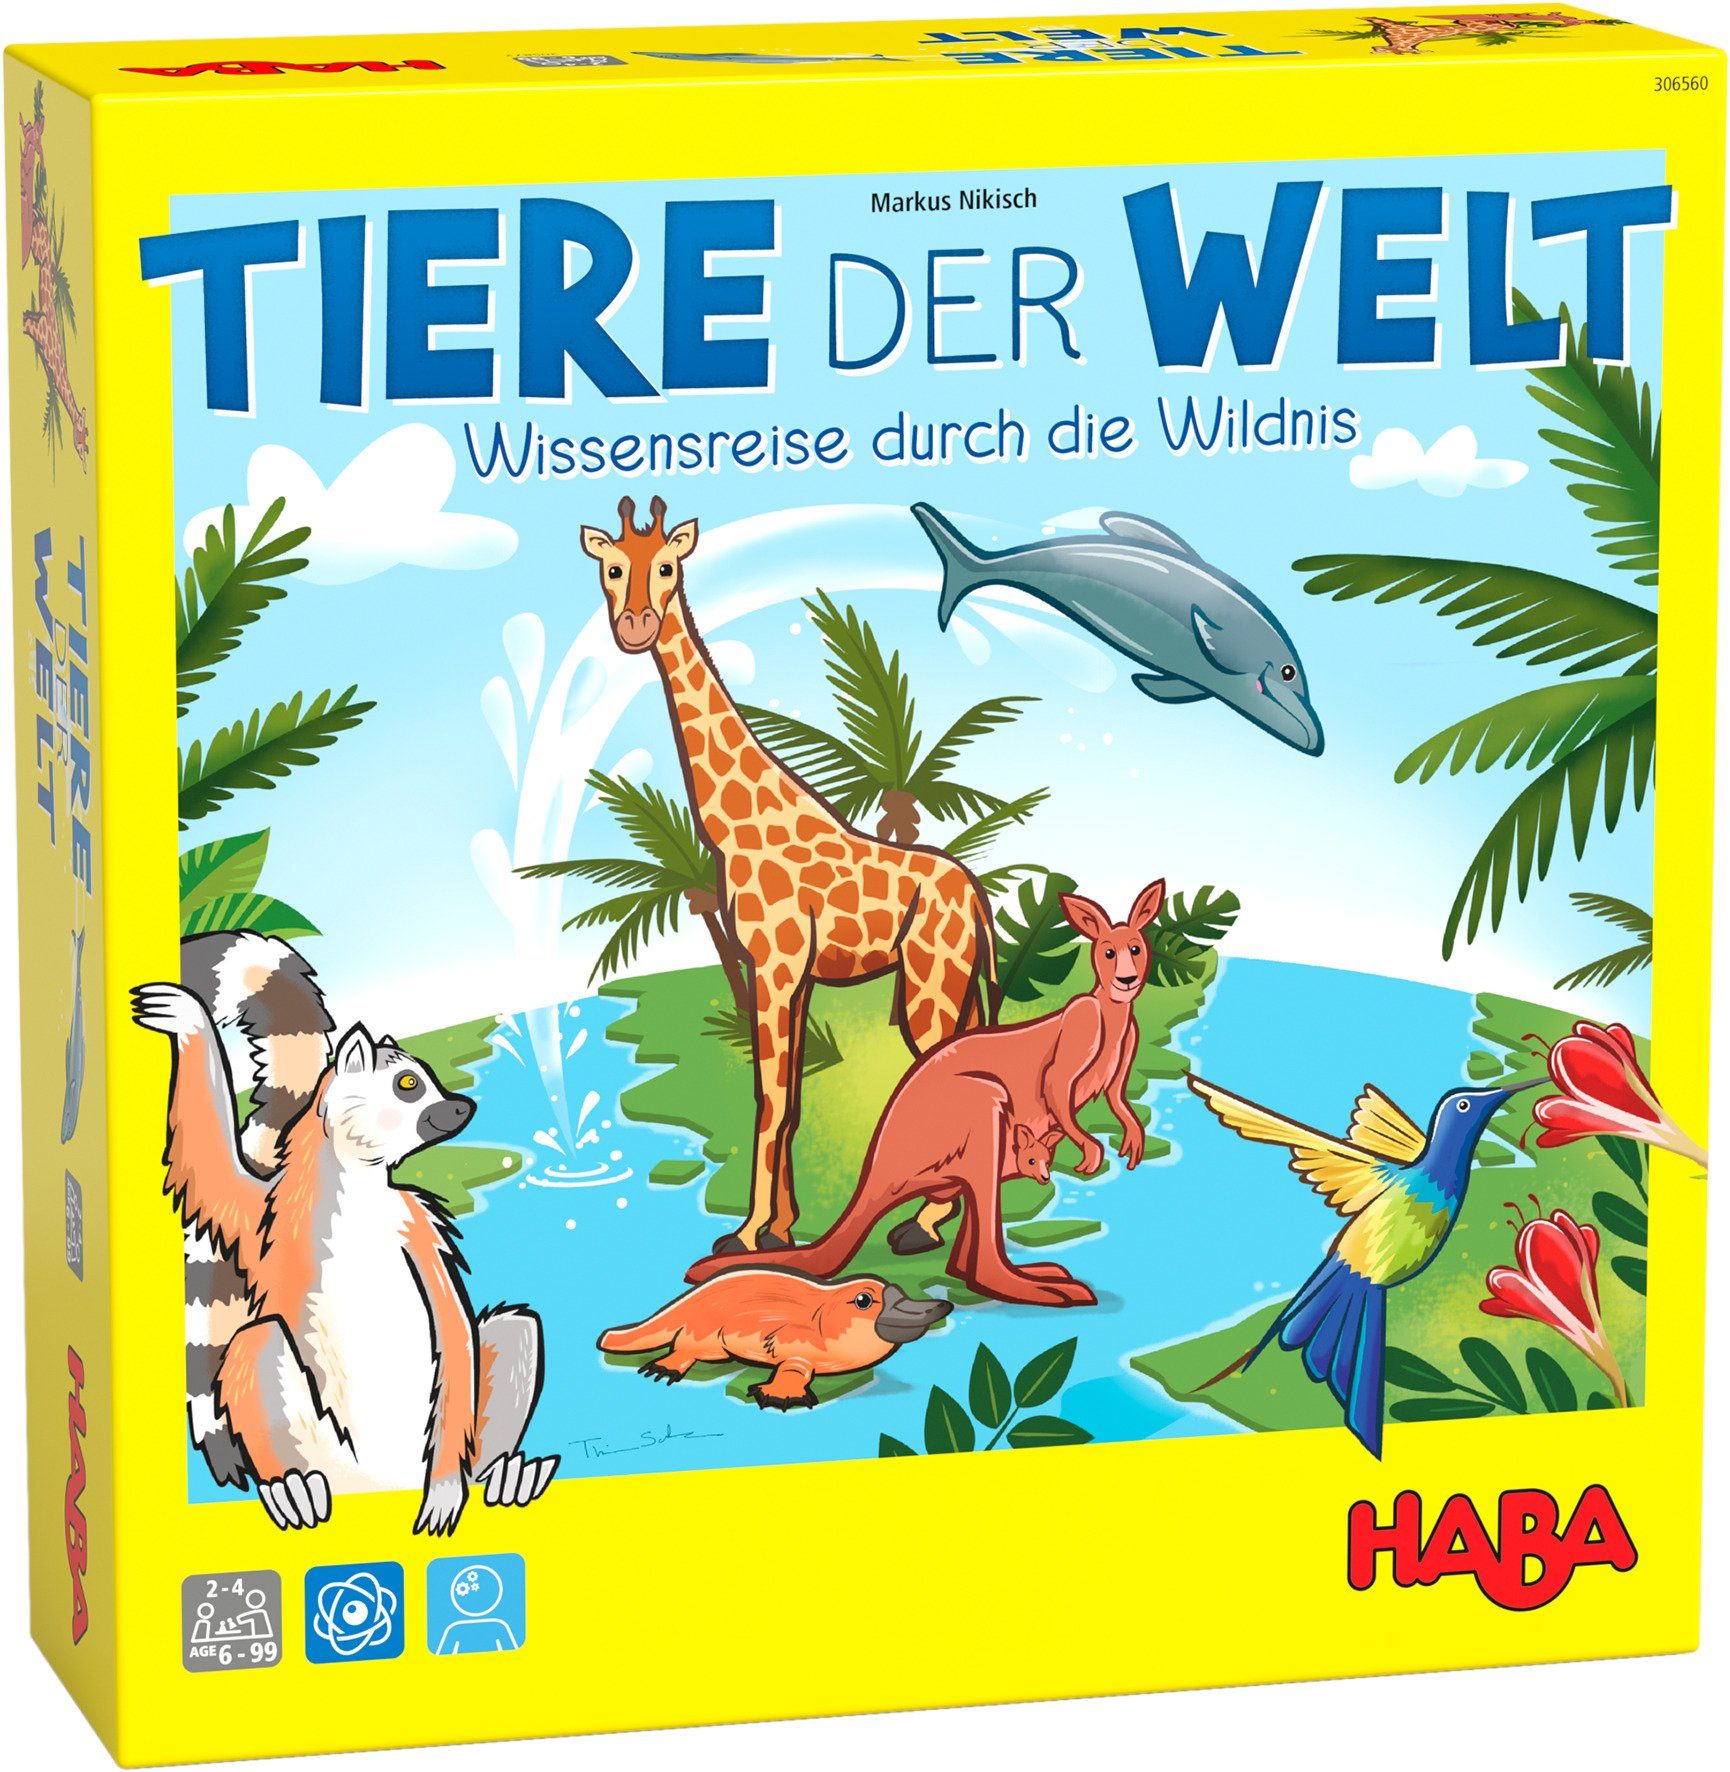 Haba Spiel, Laufspiel Tiere der Welt, Made in Germany